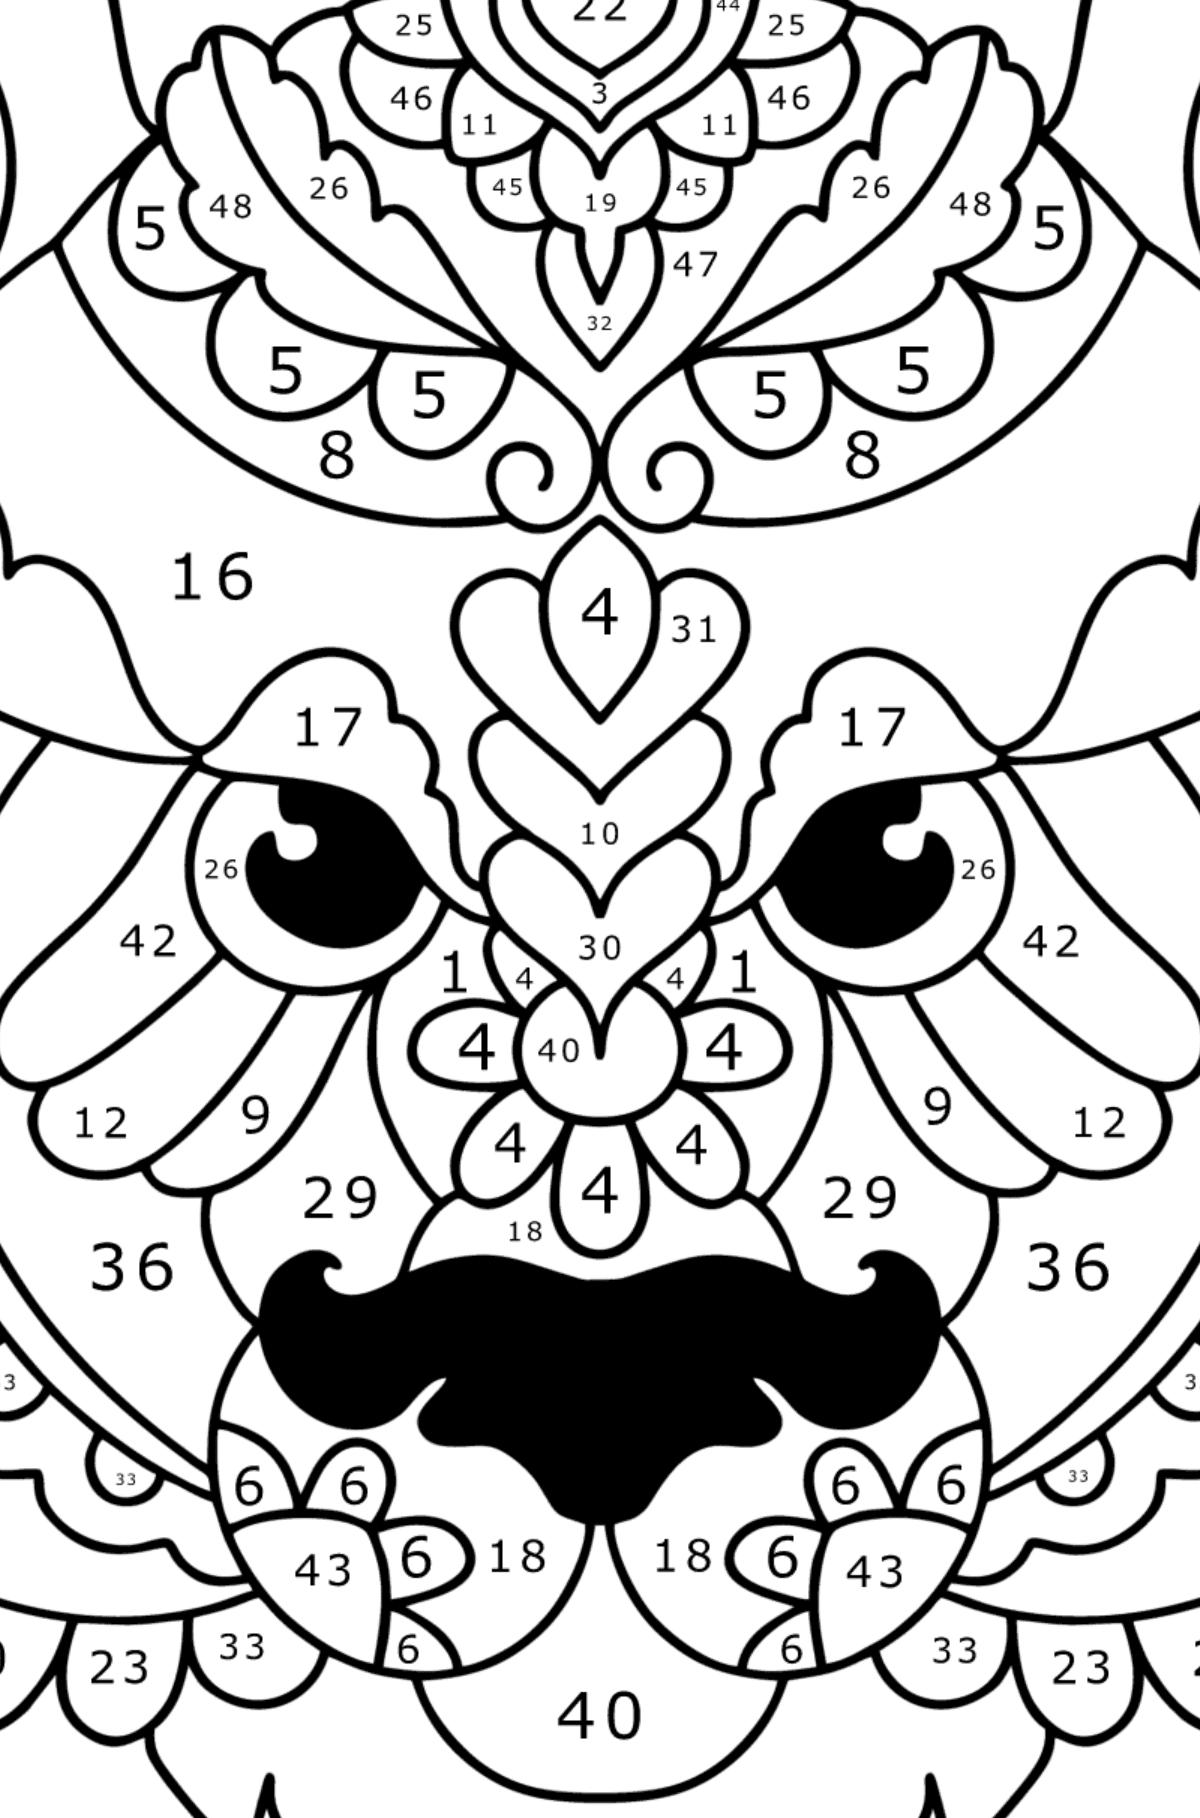 30+ Desenhos de Panda para colorir - Dicas Práticas